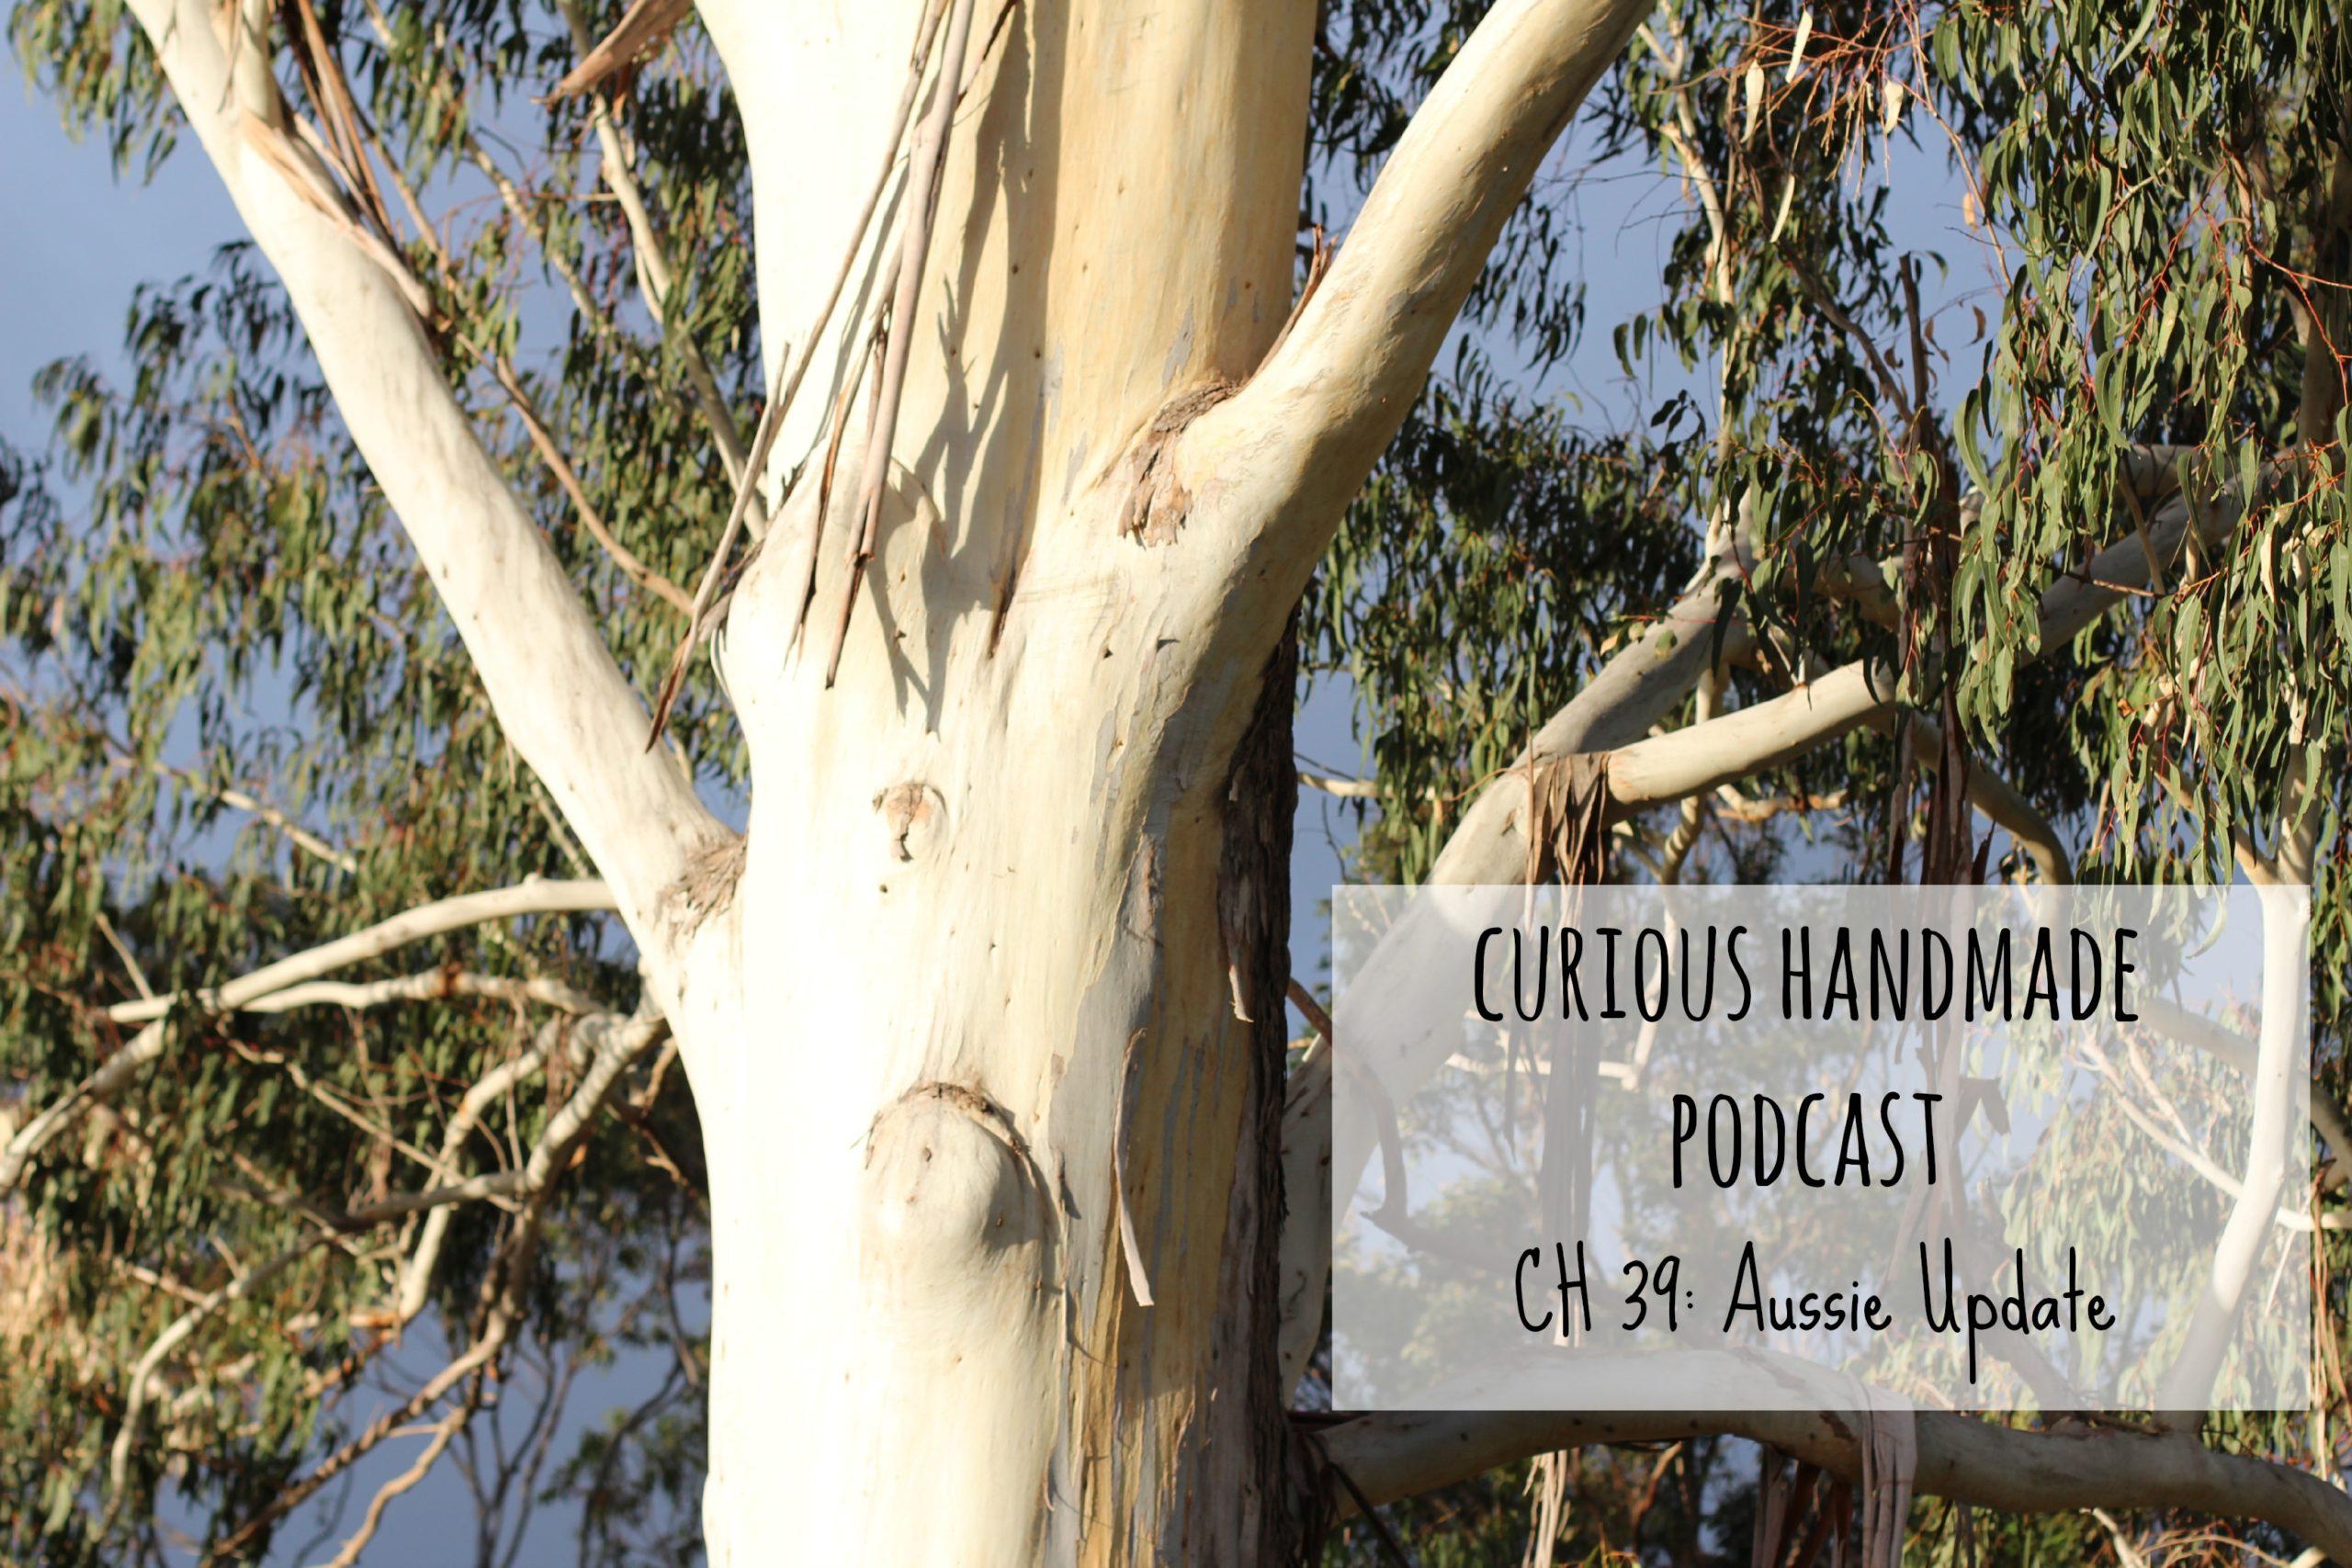 Curious Handmade Podcast Episode 39